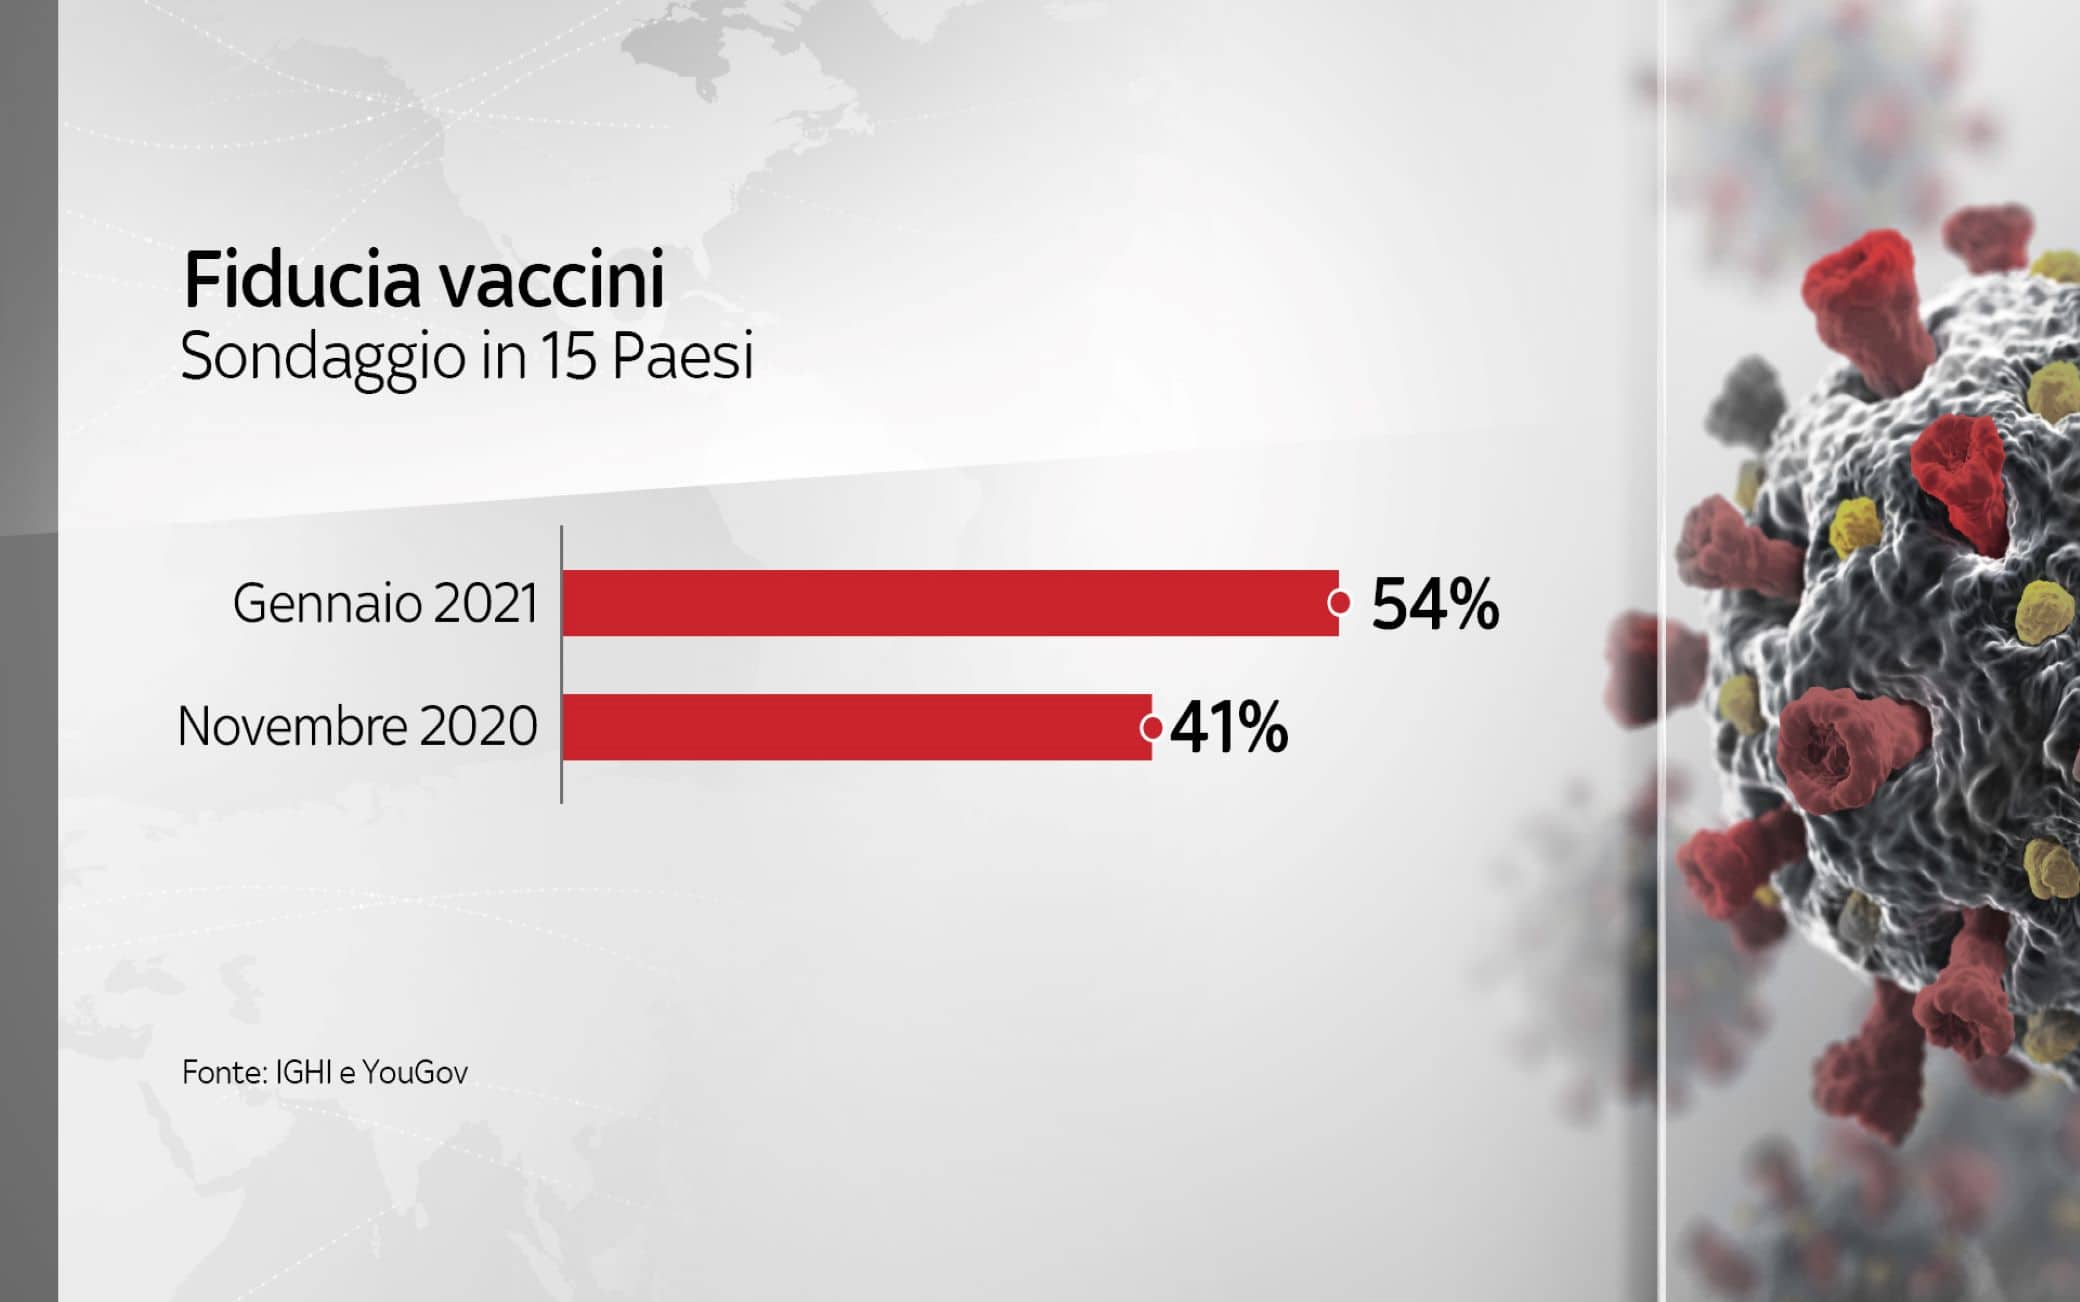 La fiducia nei confronti del vaccino